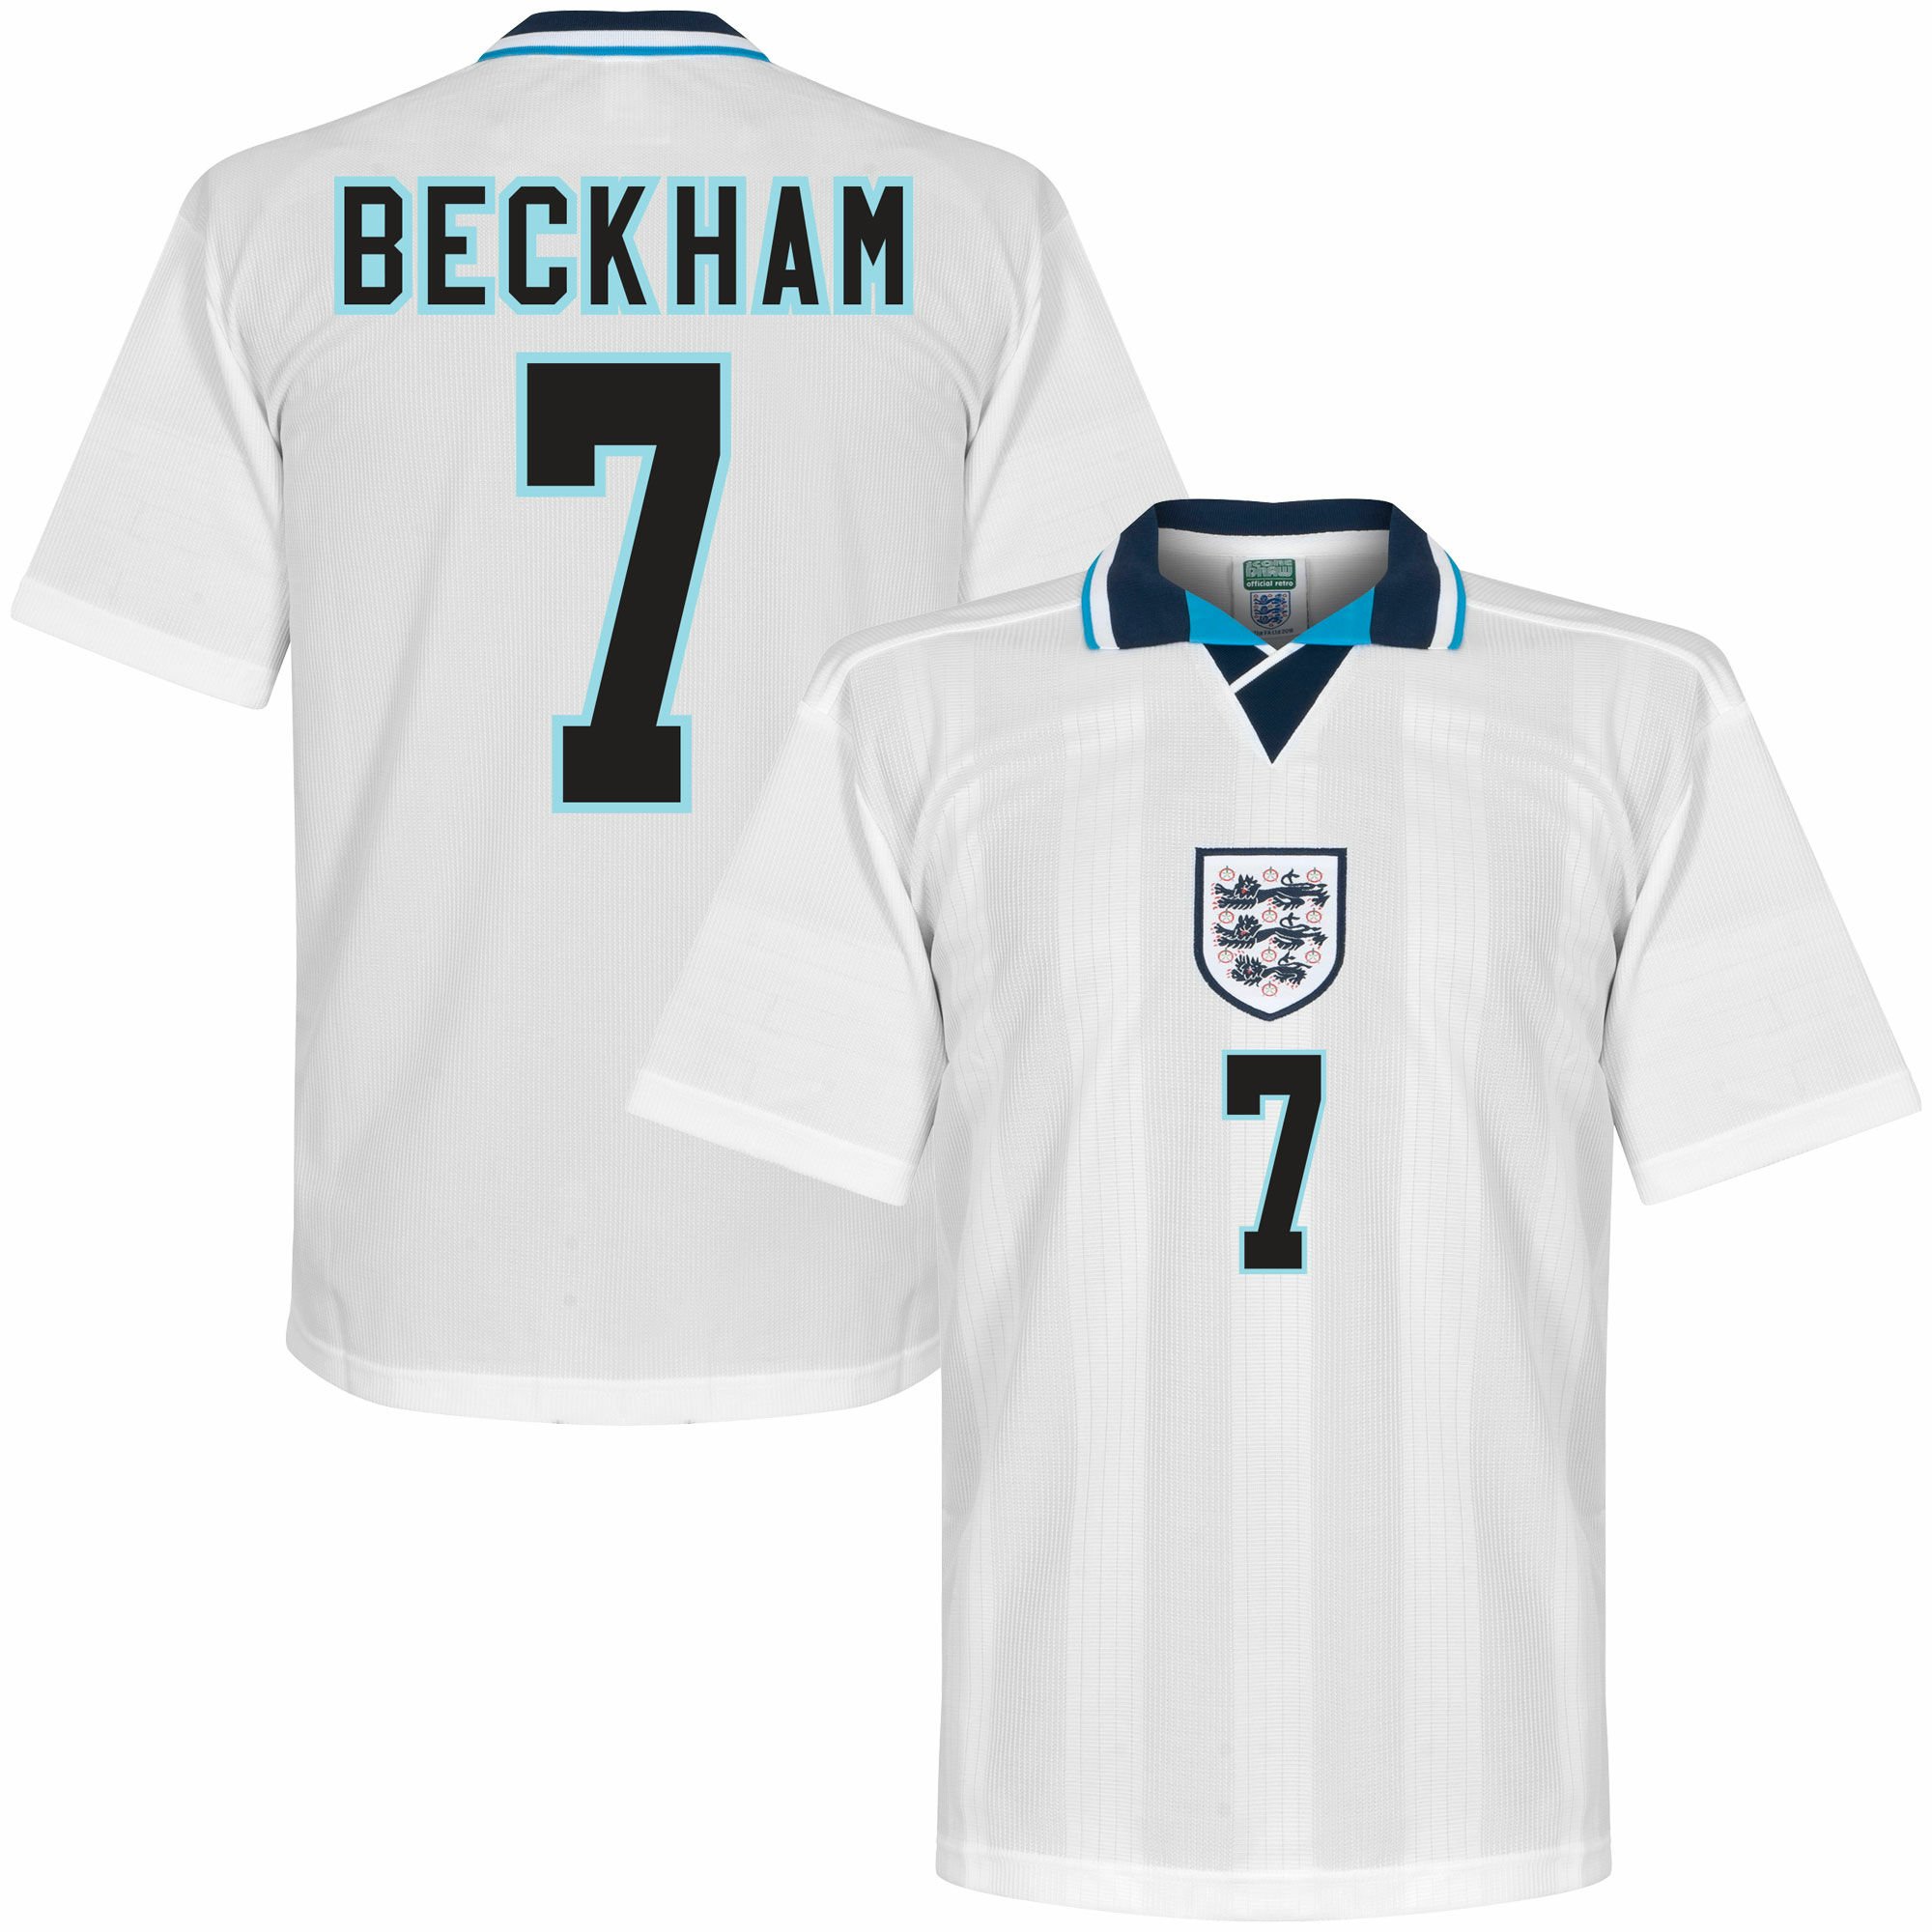 Anglie - Dres fotbalový - bílý, retrostyl, retro potisk, Euro 96, číslo 7, domácí, David Beckham